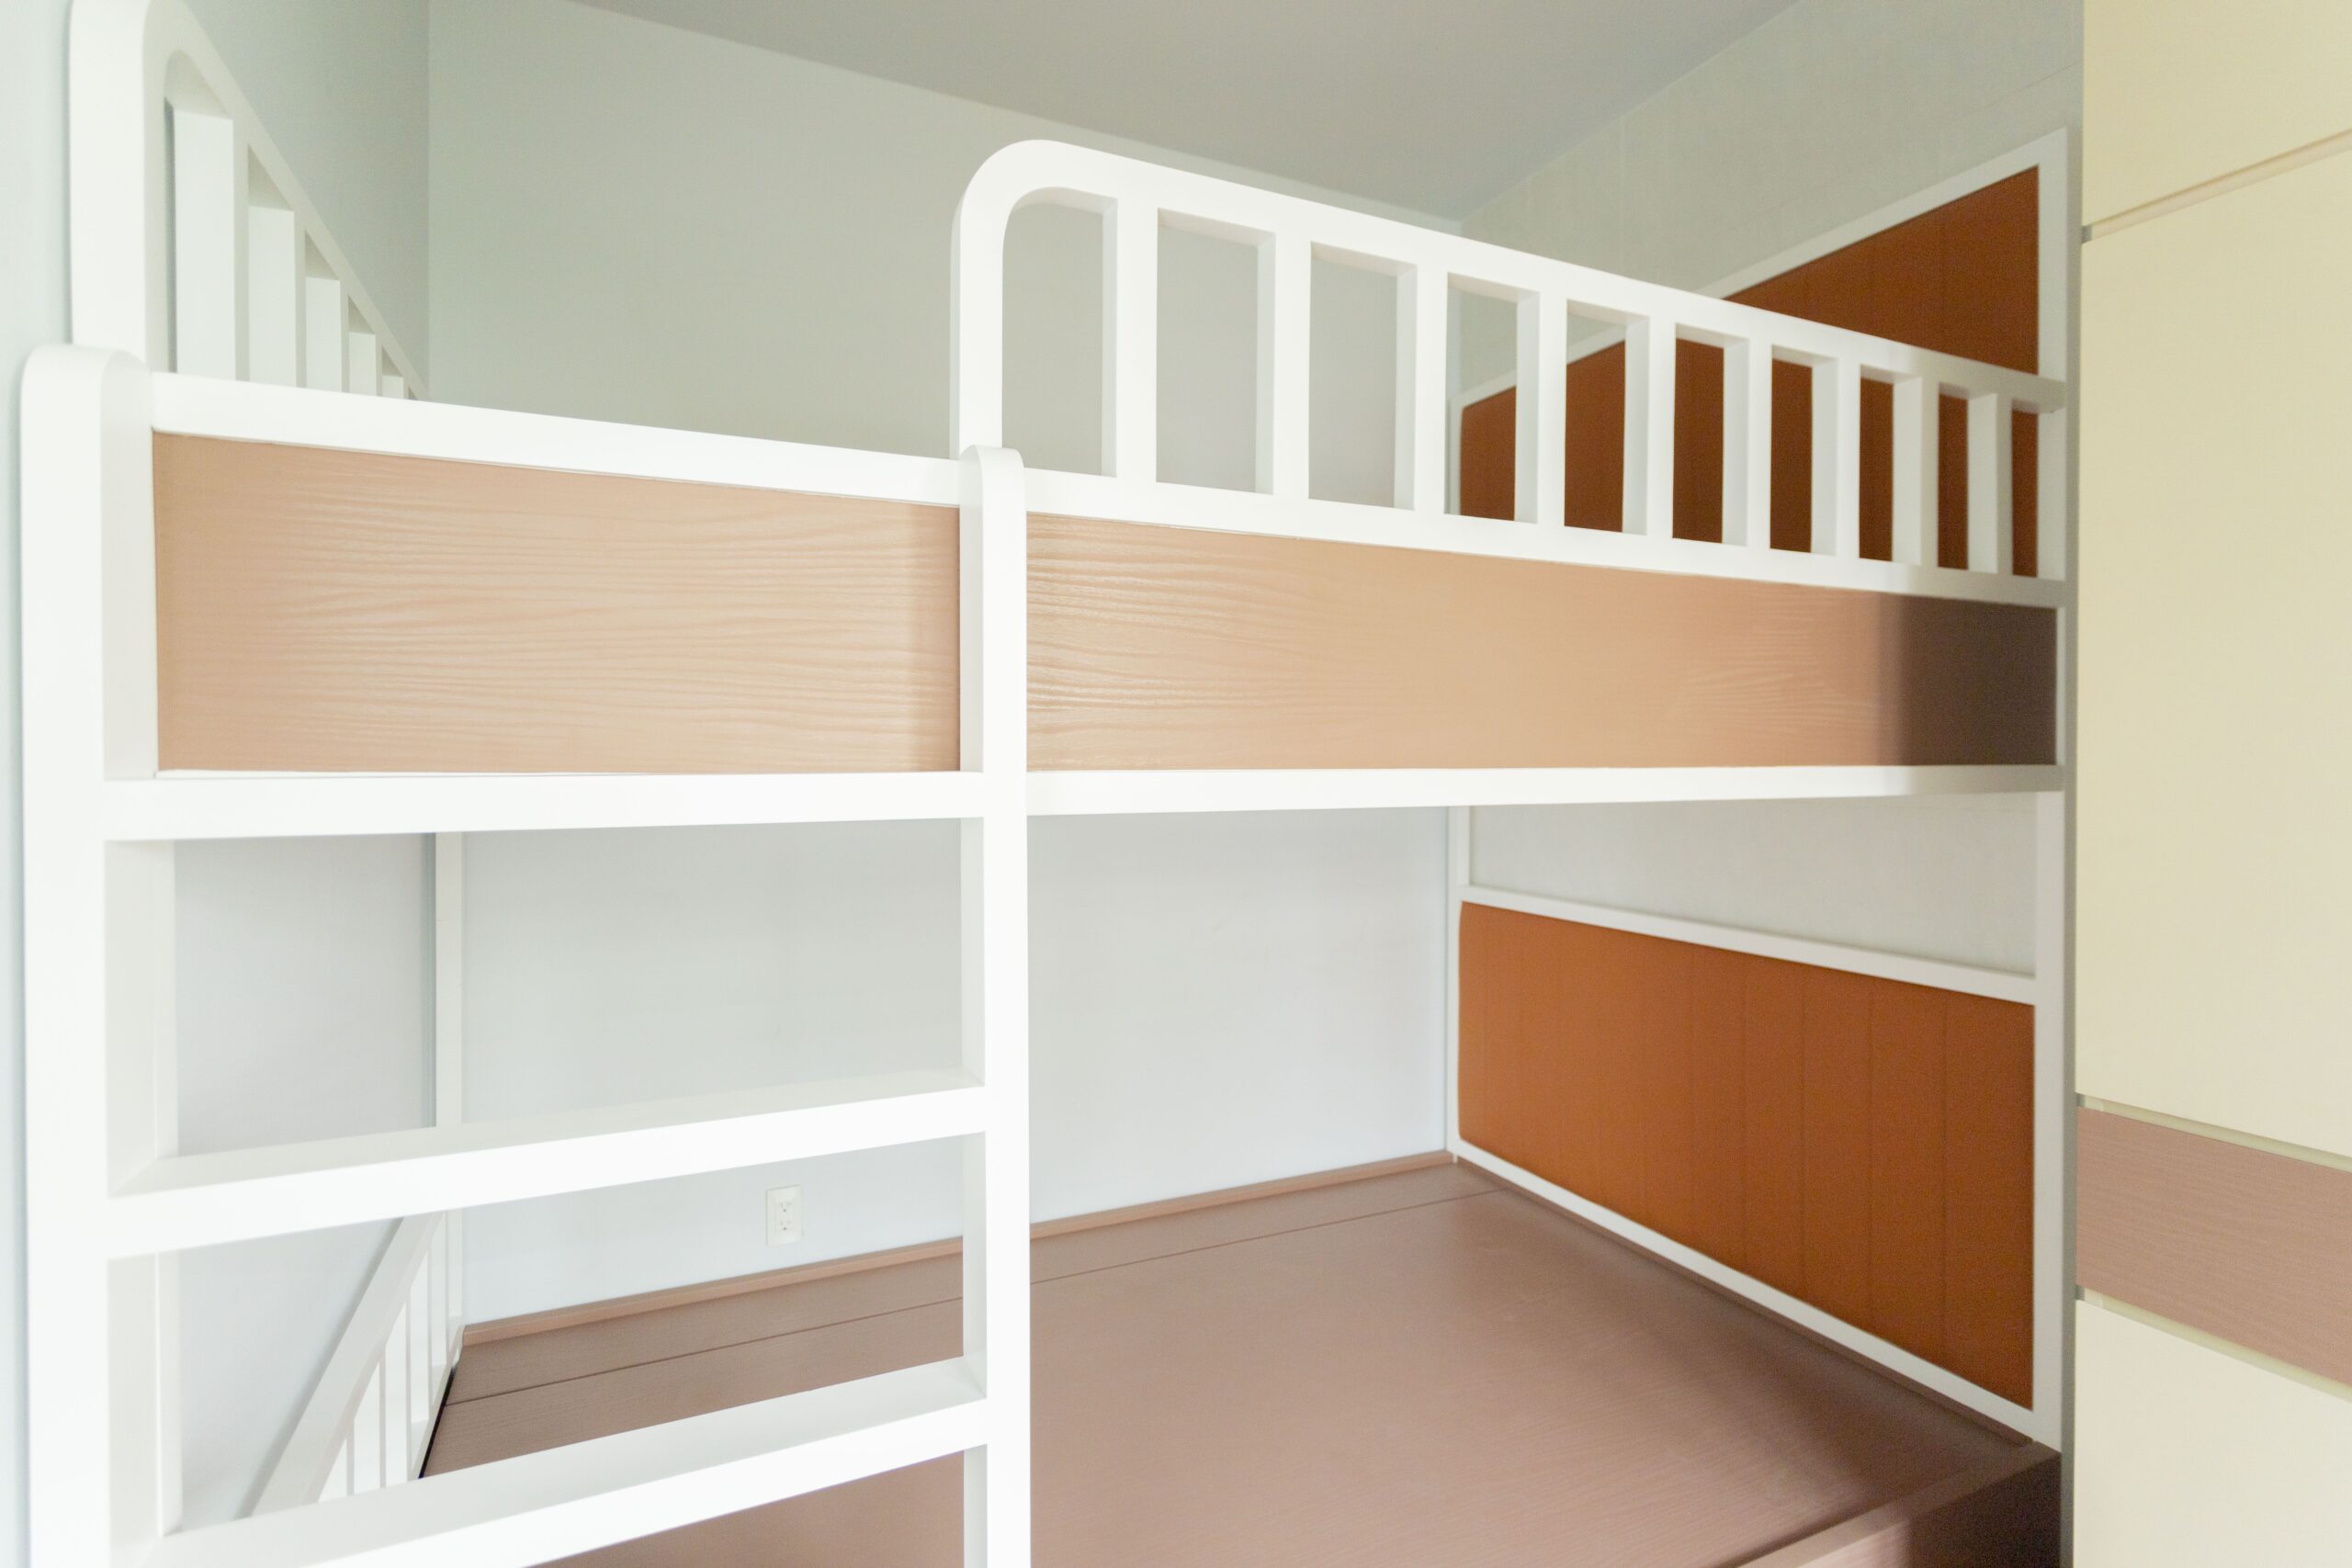 Thi công nội thất phòng ngủ 2 bé sử dụng tông màu nâu trung tính mang đến cảm giác thoải mái cho cả 2 bé 